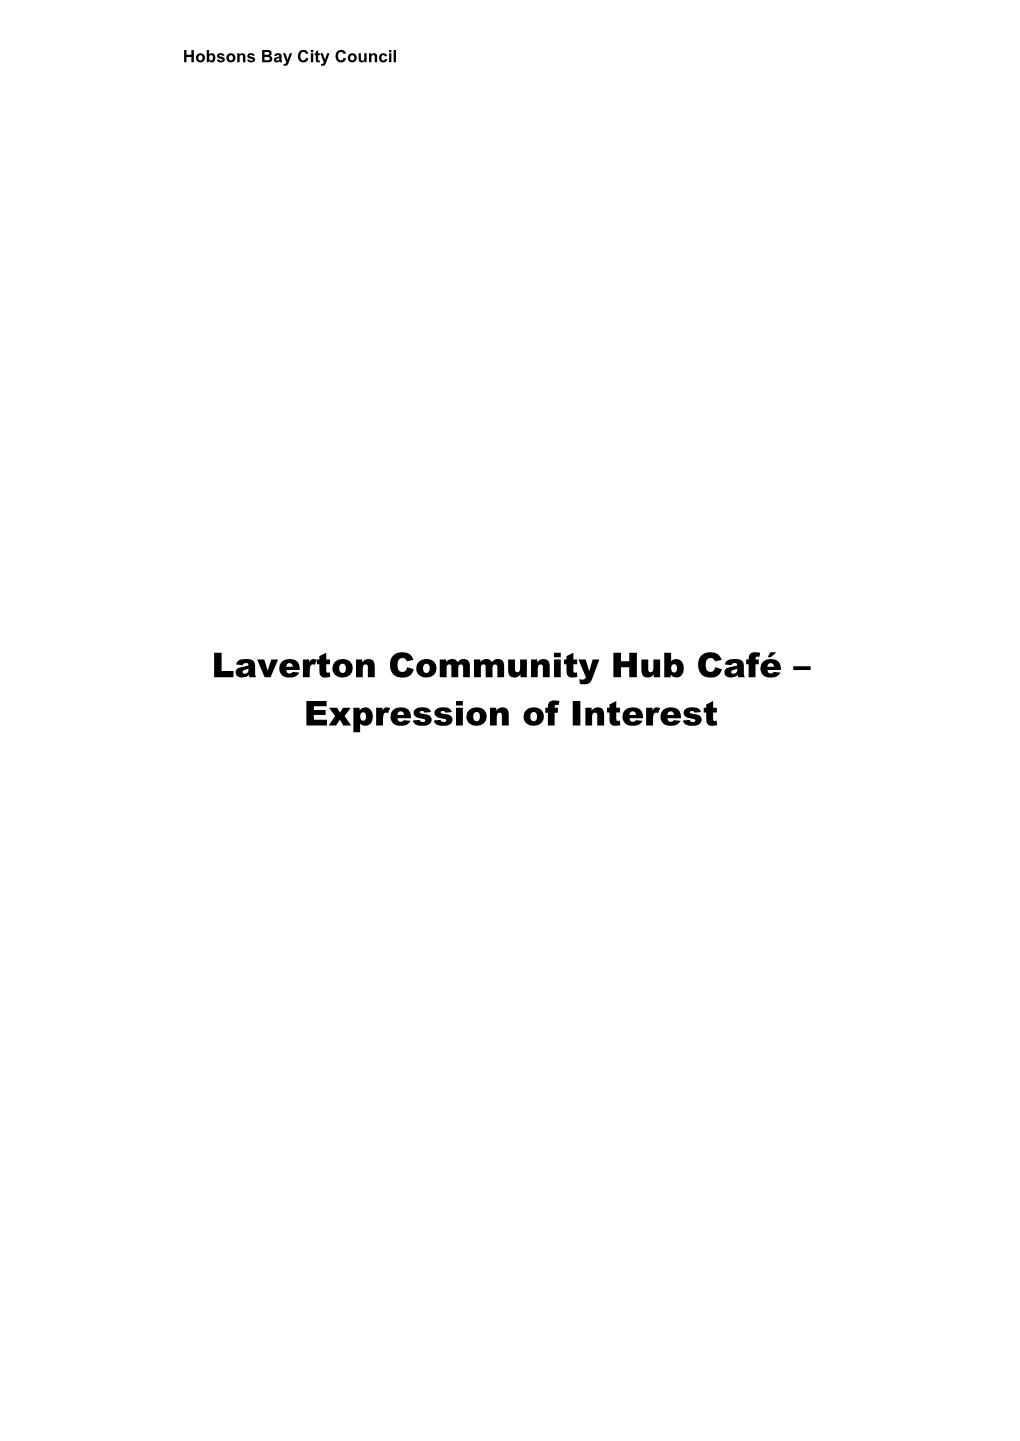 Appendix - Laverton Community Hub EOI 3 A1908319